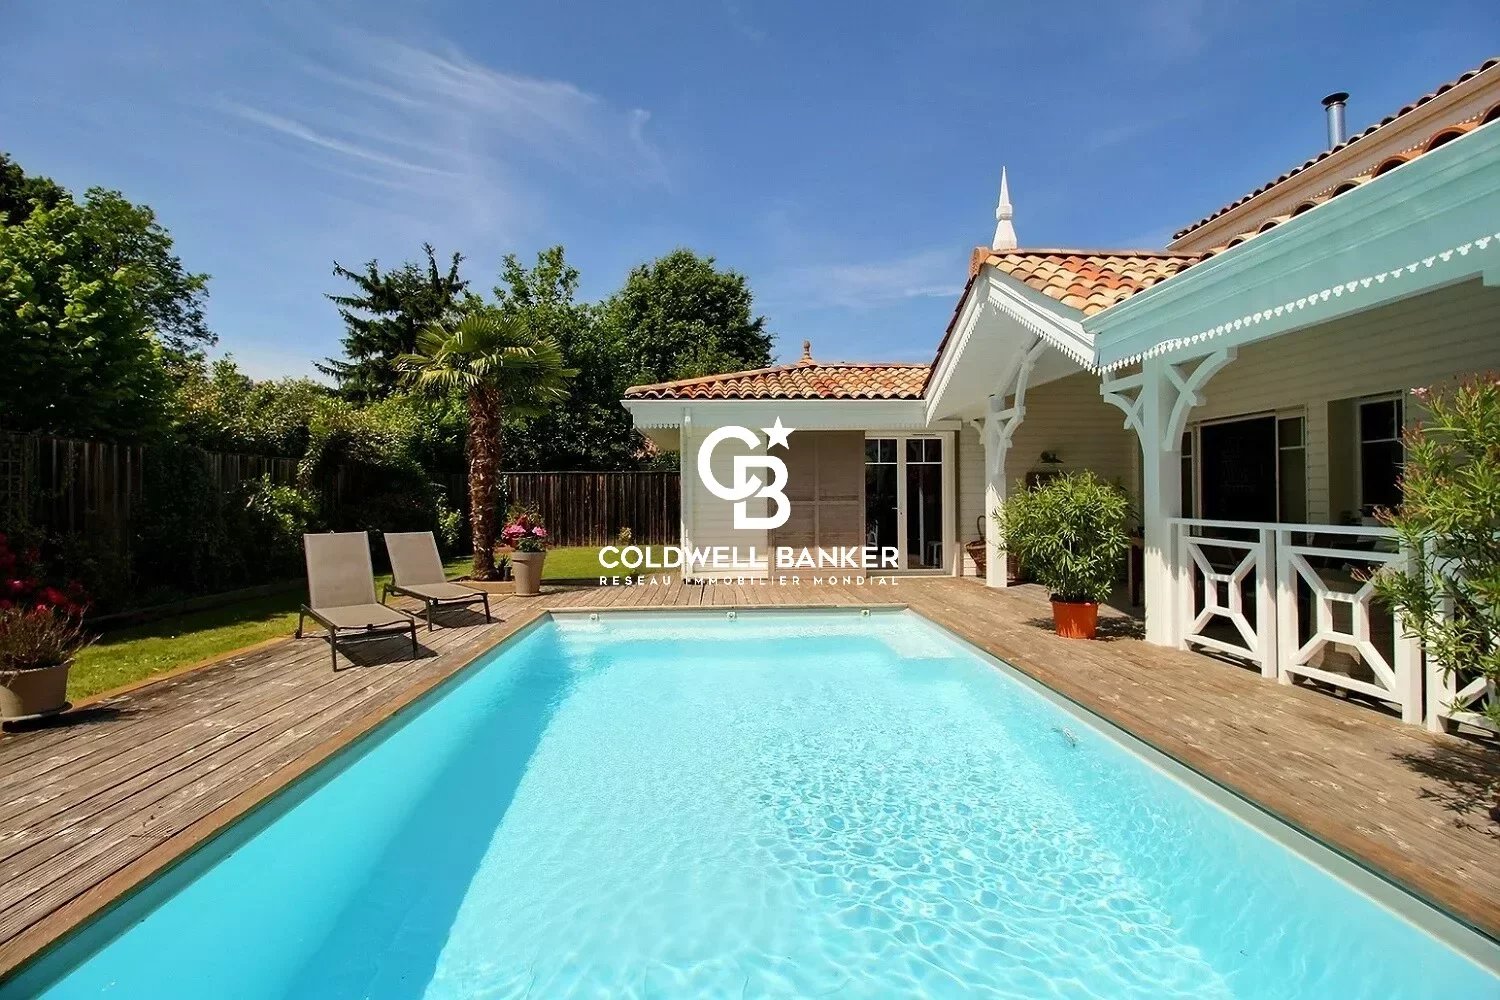 ANDERNOS - villa au style arcachonnais - 3 chambres - terrasse - piscine - sauna